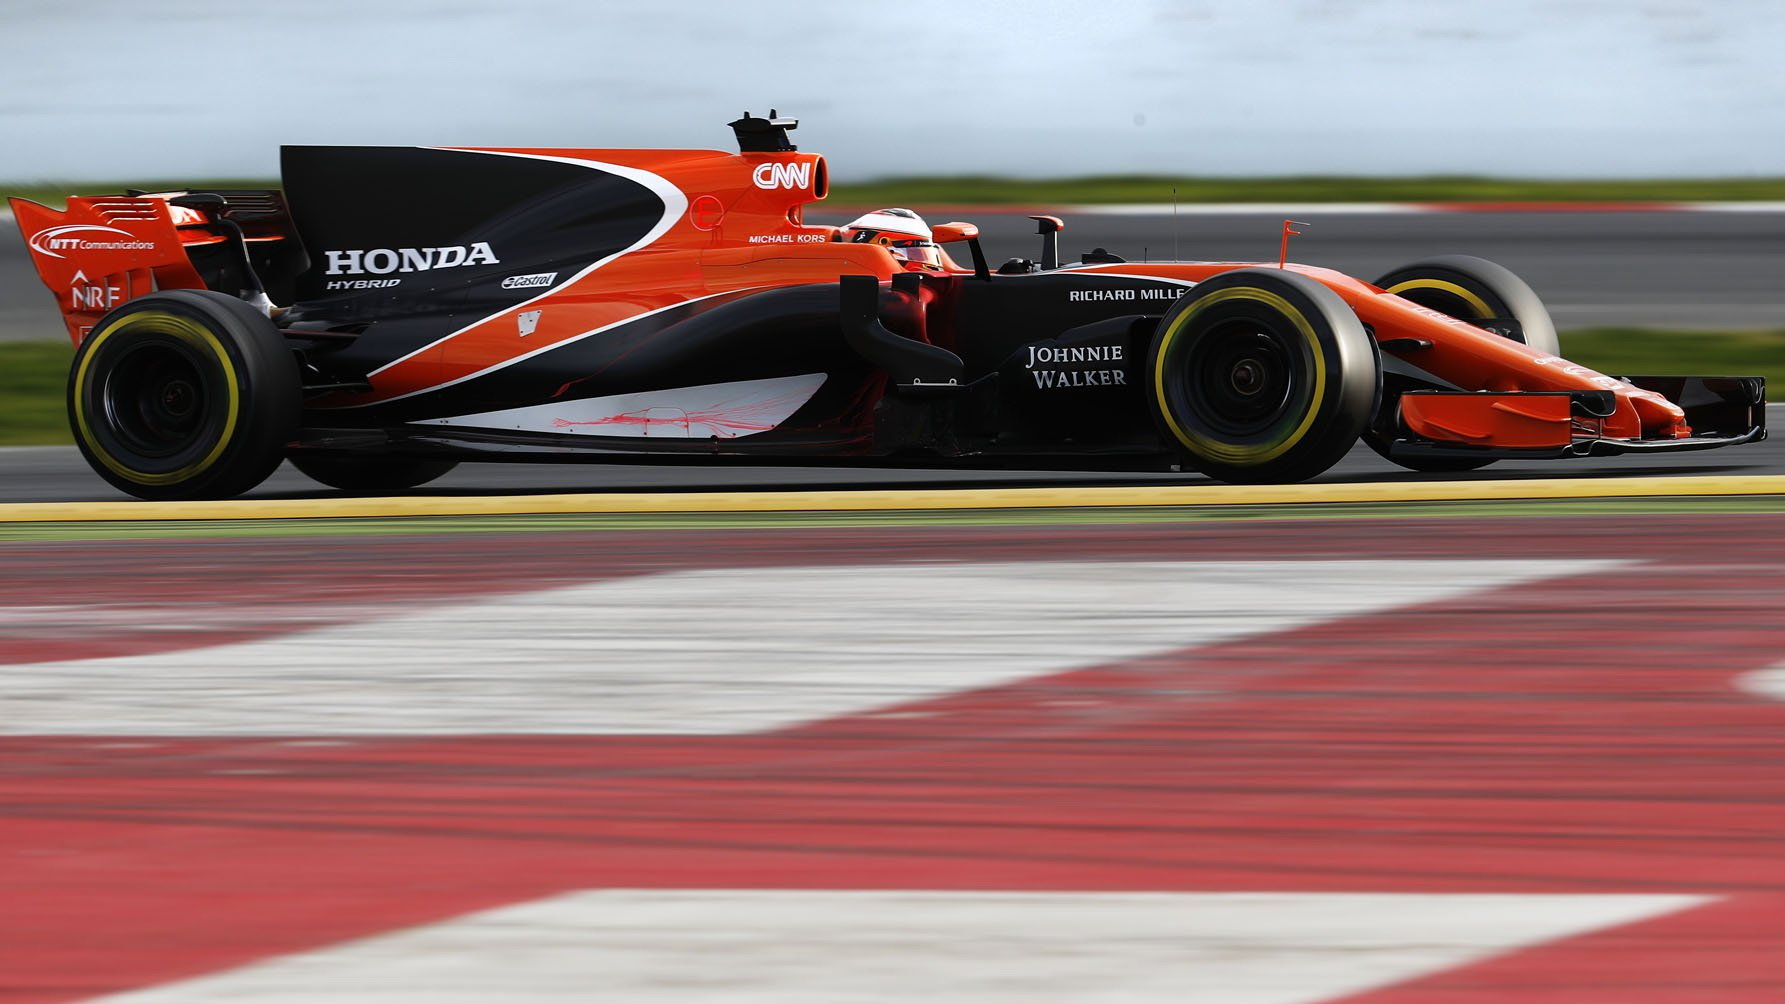 McLarenem poháněný Hondou během testů v Barceloně